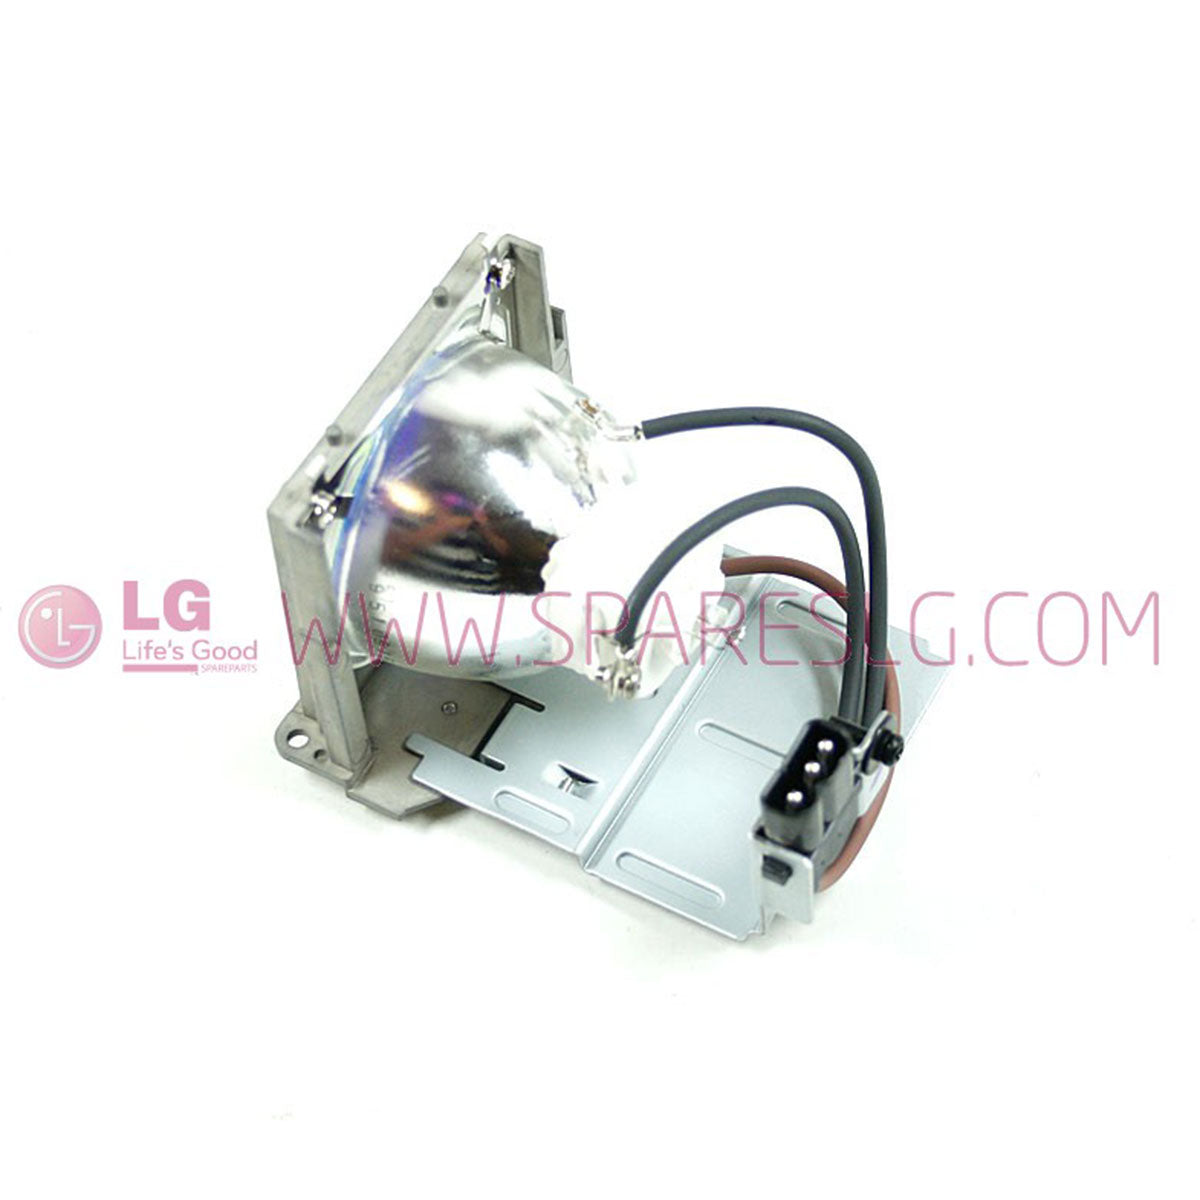 LG 6912B22008E Ushio Projector Lamp Module